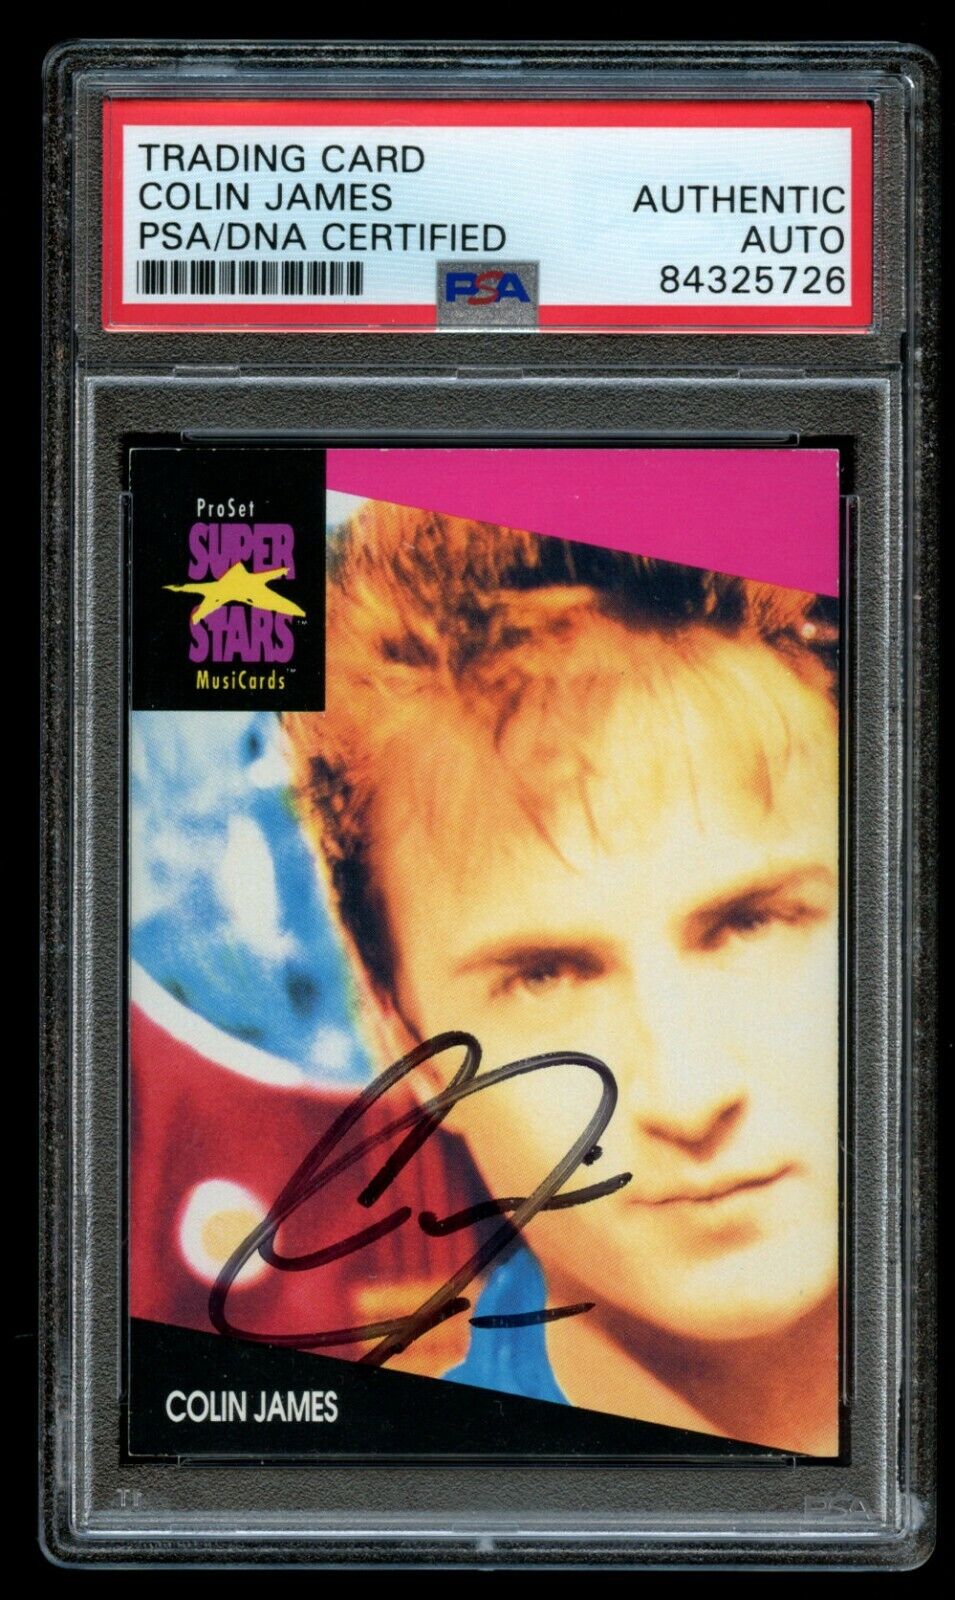 Colin James signed autograph 1991 Pro Set MusiCard Super Stars Card PSA Slabbed